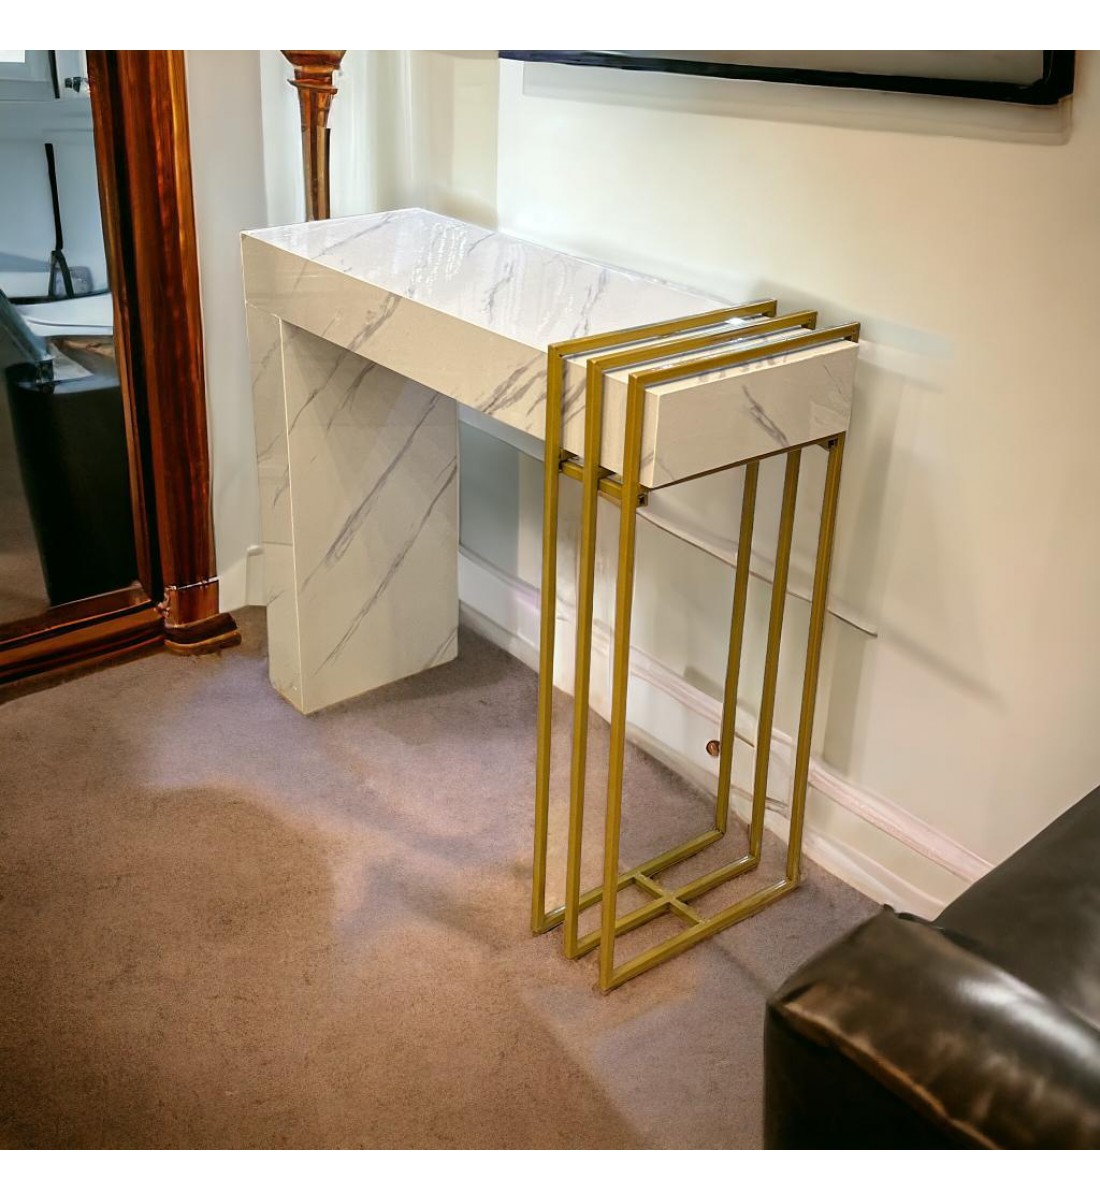 طاولة مدخل بديل رخام ابيض علي ذهبي شكل جديد وانيق (88×30×75سم